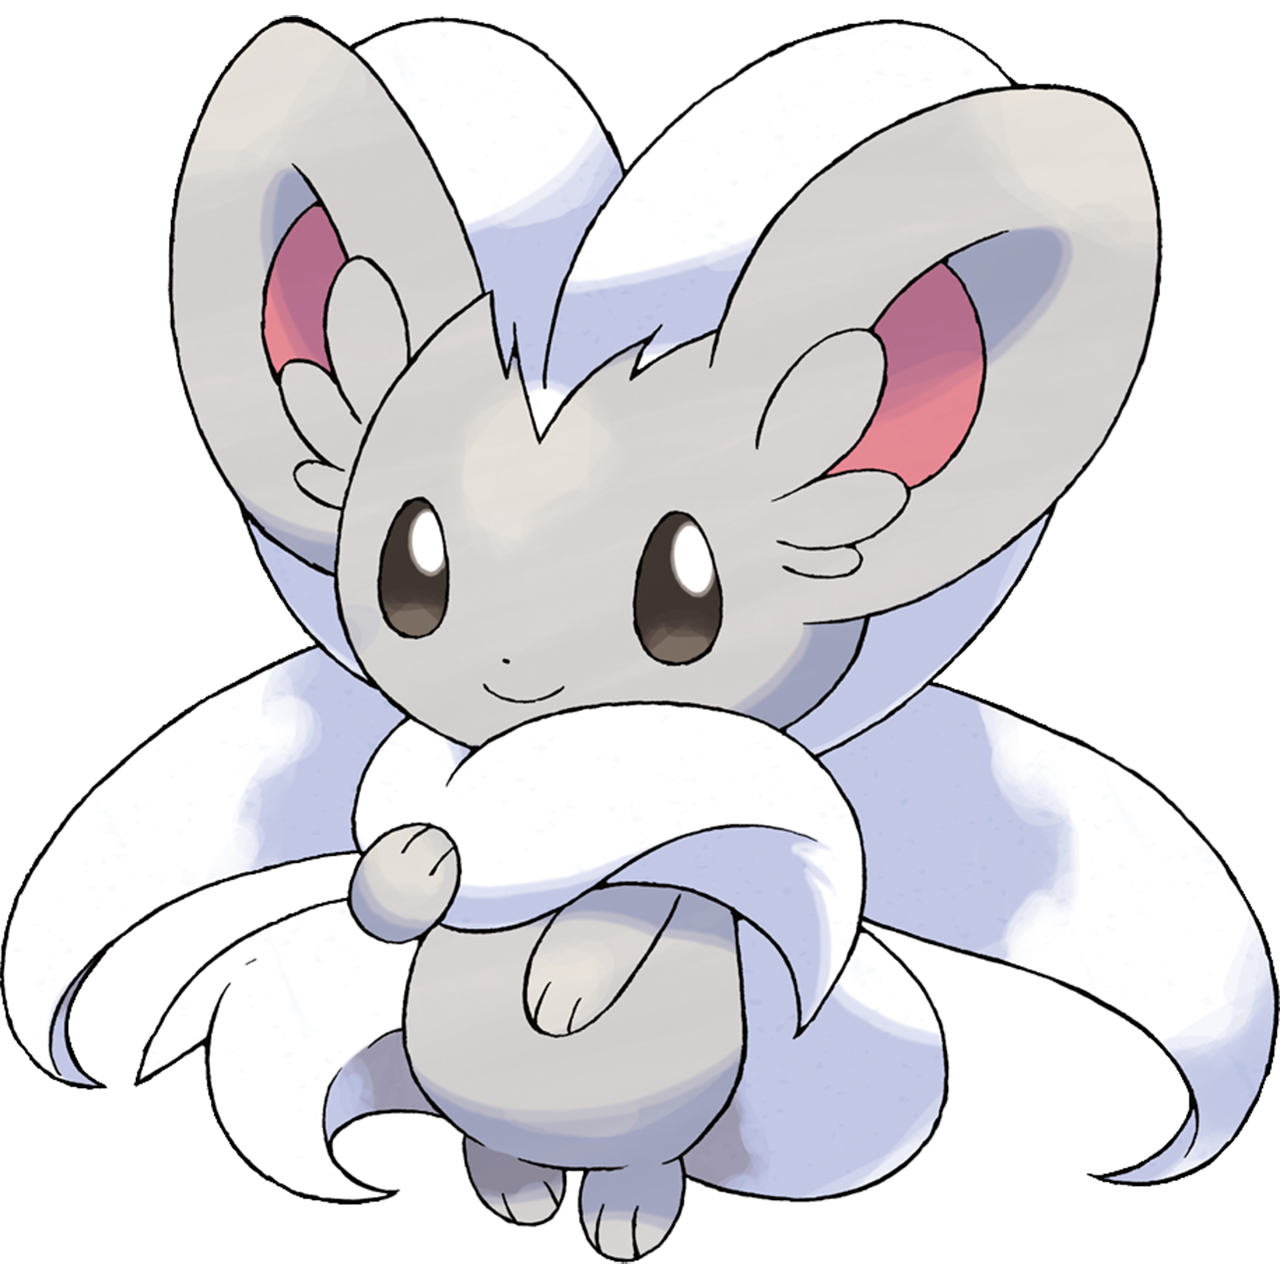 Lista de Pokémon por tipo - WikiDex, la enciclopedia Pokémon